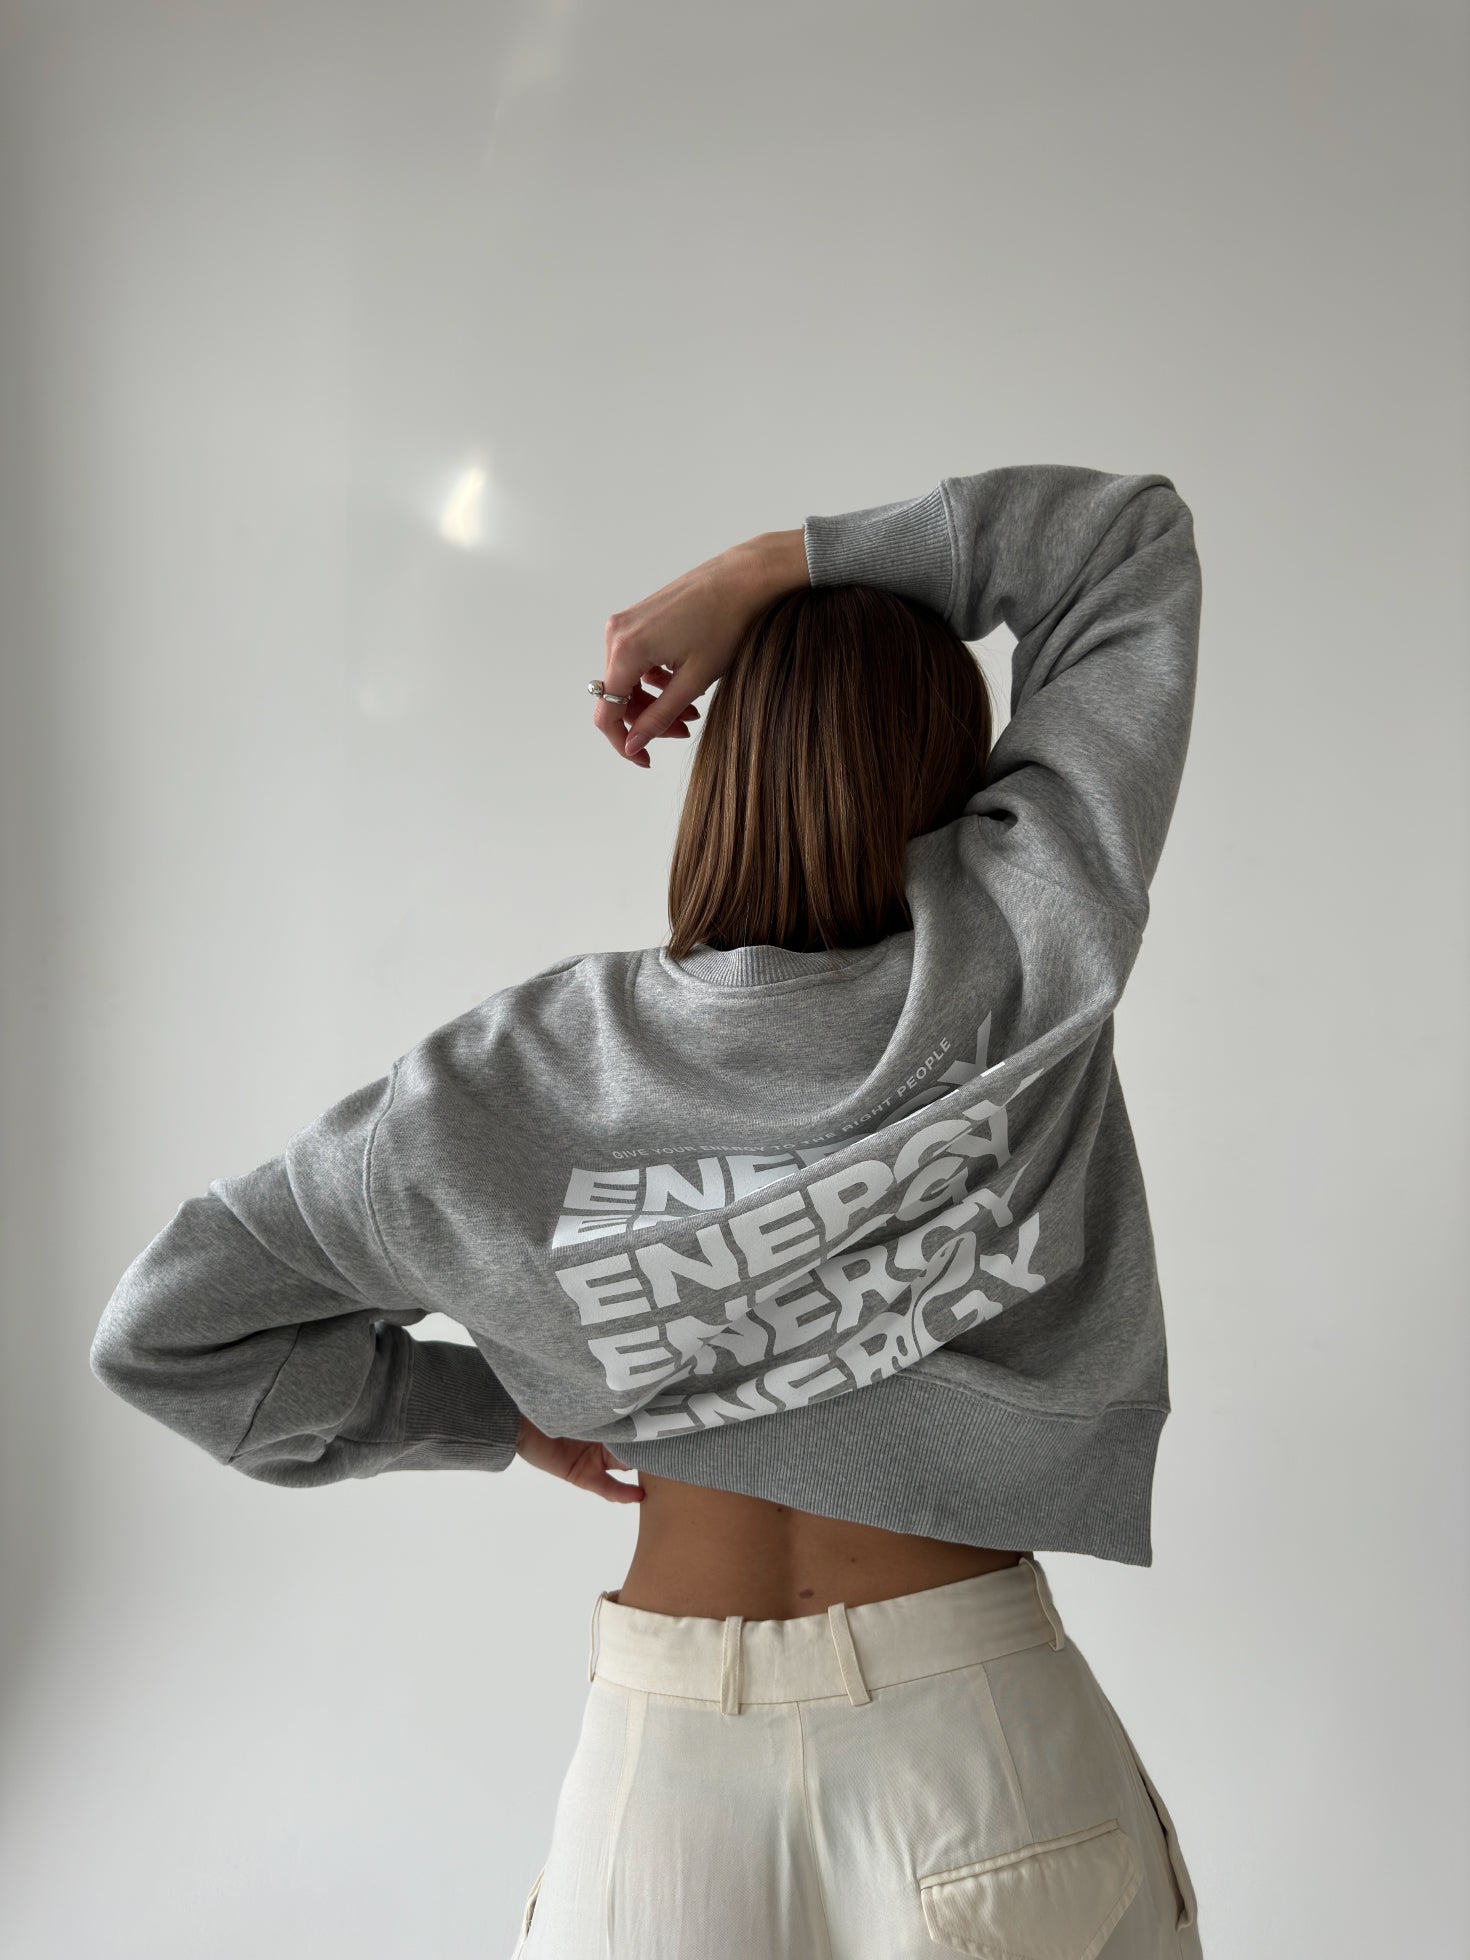 ENERGY Sweater